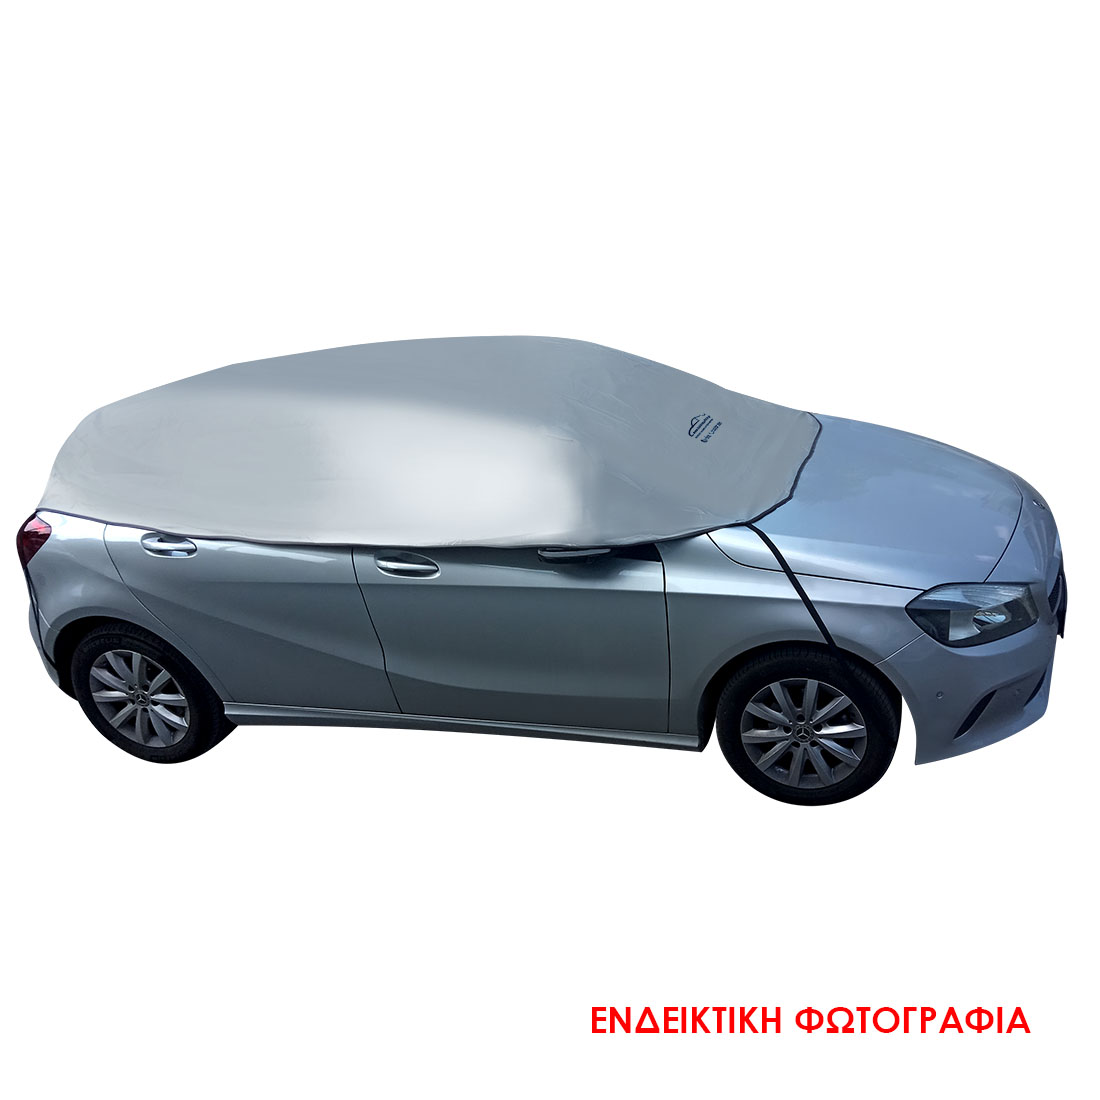 Ημικουκούλα PVC αδιάβροχη για SUV (SUV1) (3.25x1.40x0.70cm)